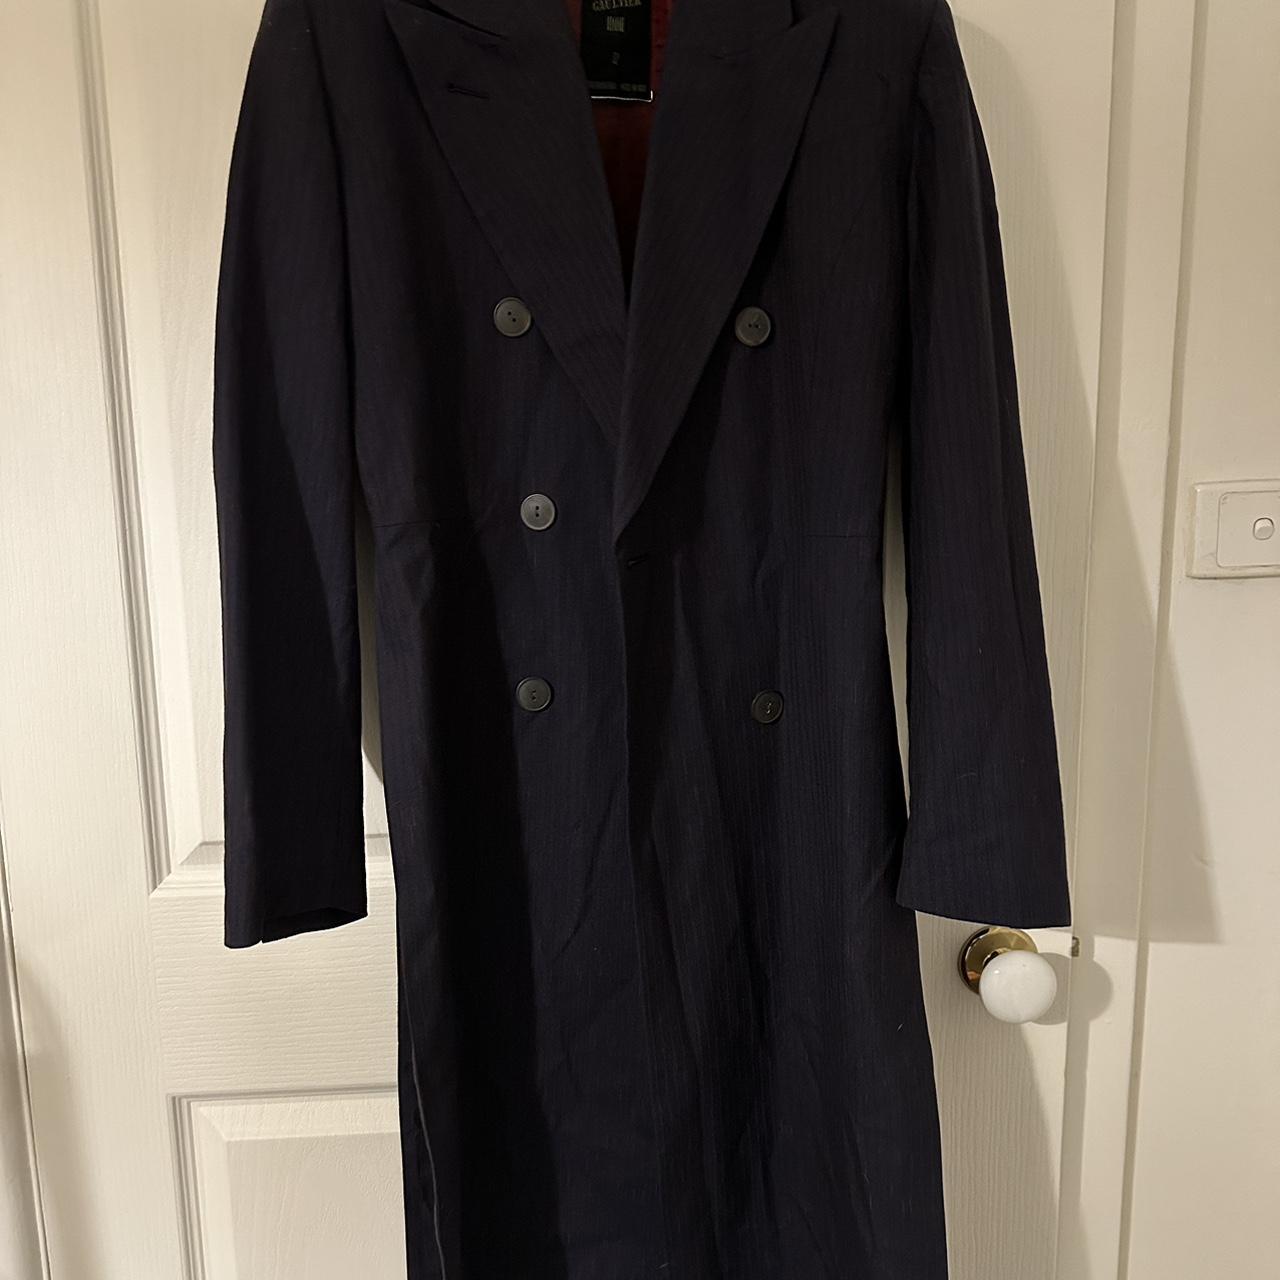 Jean Paul Gaultier Blazer Coat Size: 42 Can do pick... - Depop